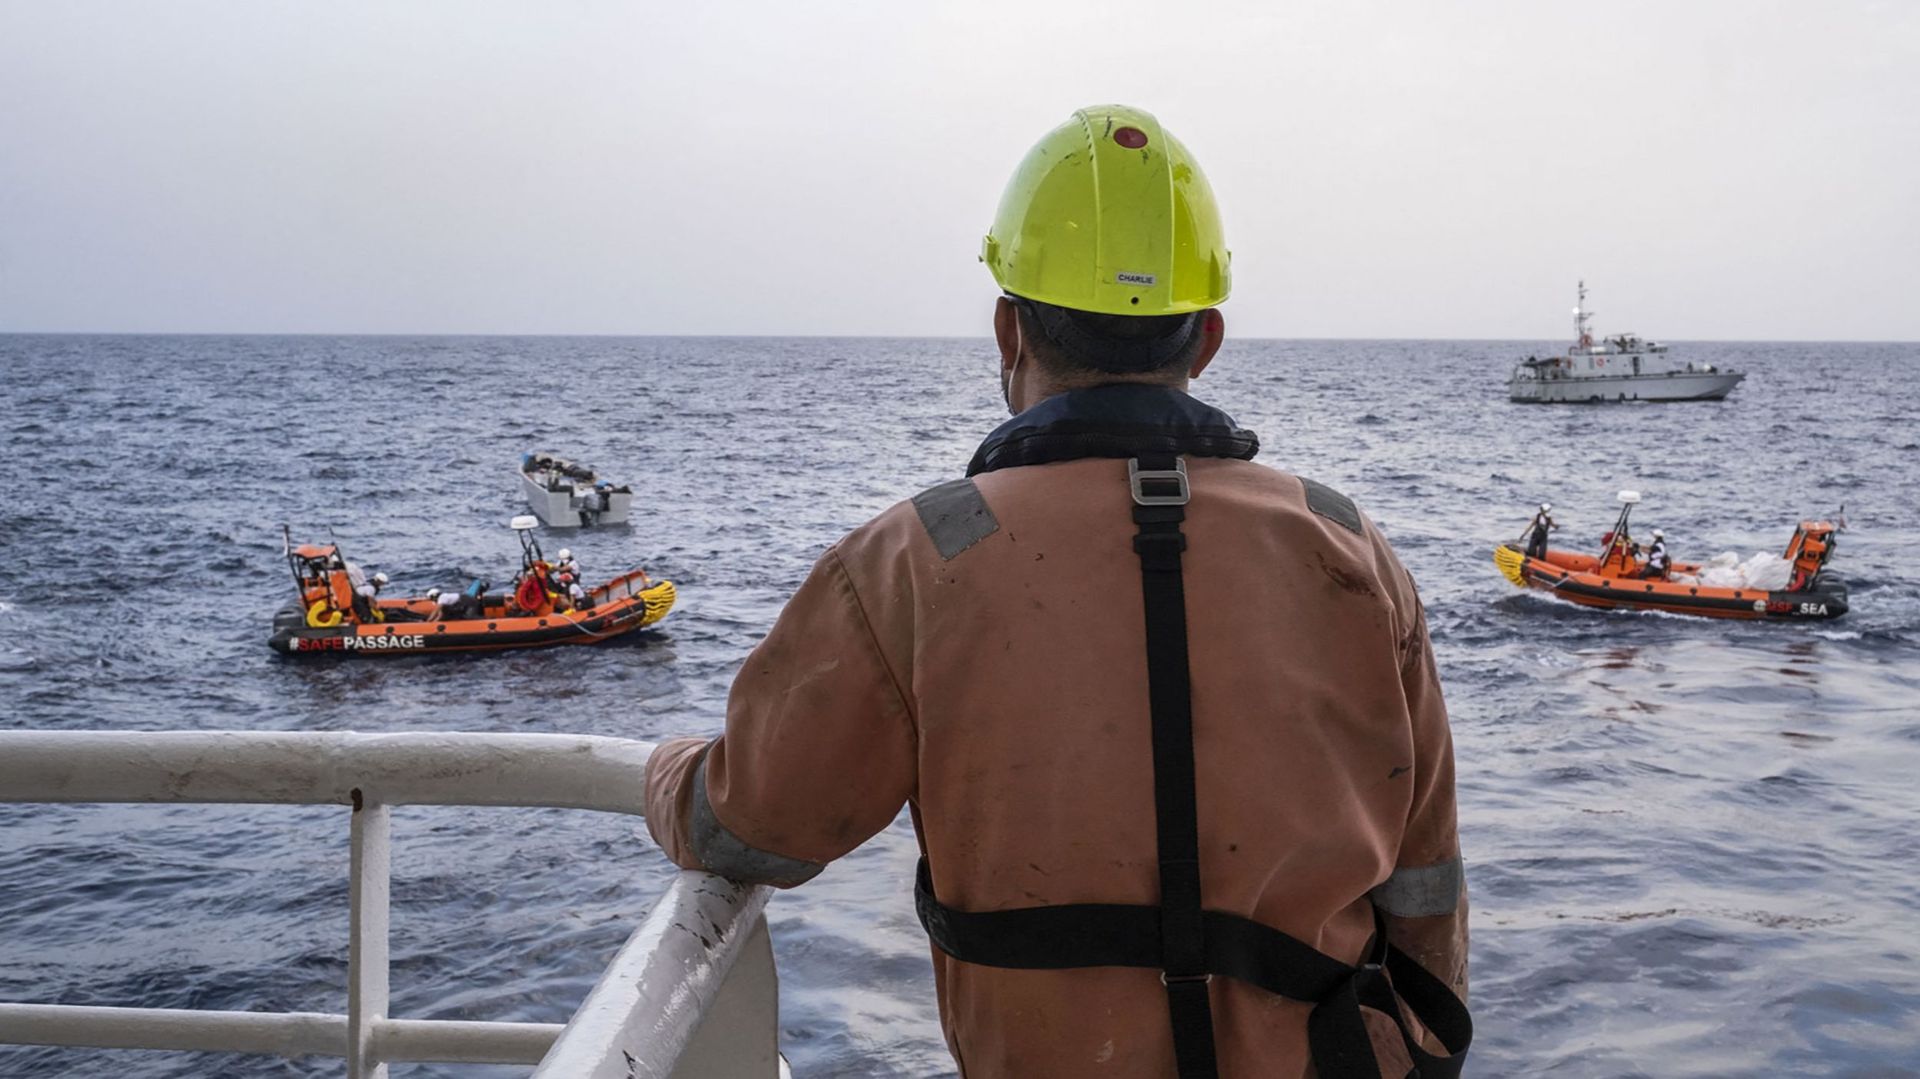 Cette photo publiée le 17 novembre 2021 par Médecins Sans Frontières (MSF) montre des membres de l'équipage du Geo Barents participant à une opération de recherche et de sauvetage de migrants à environ 30 miles des côtes libyennes.